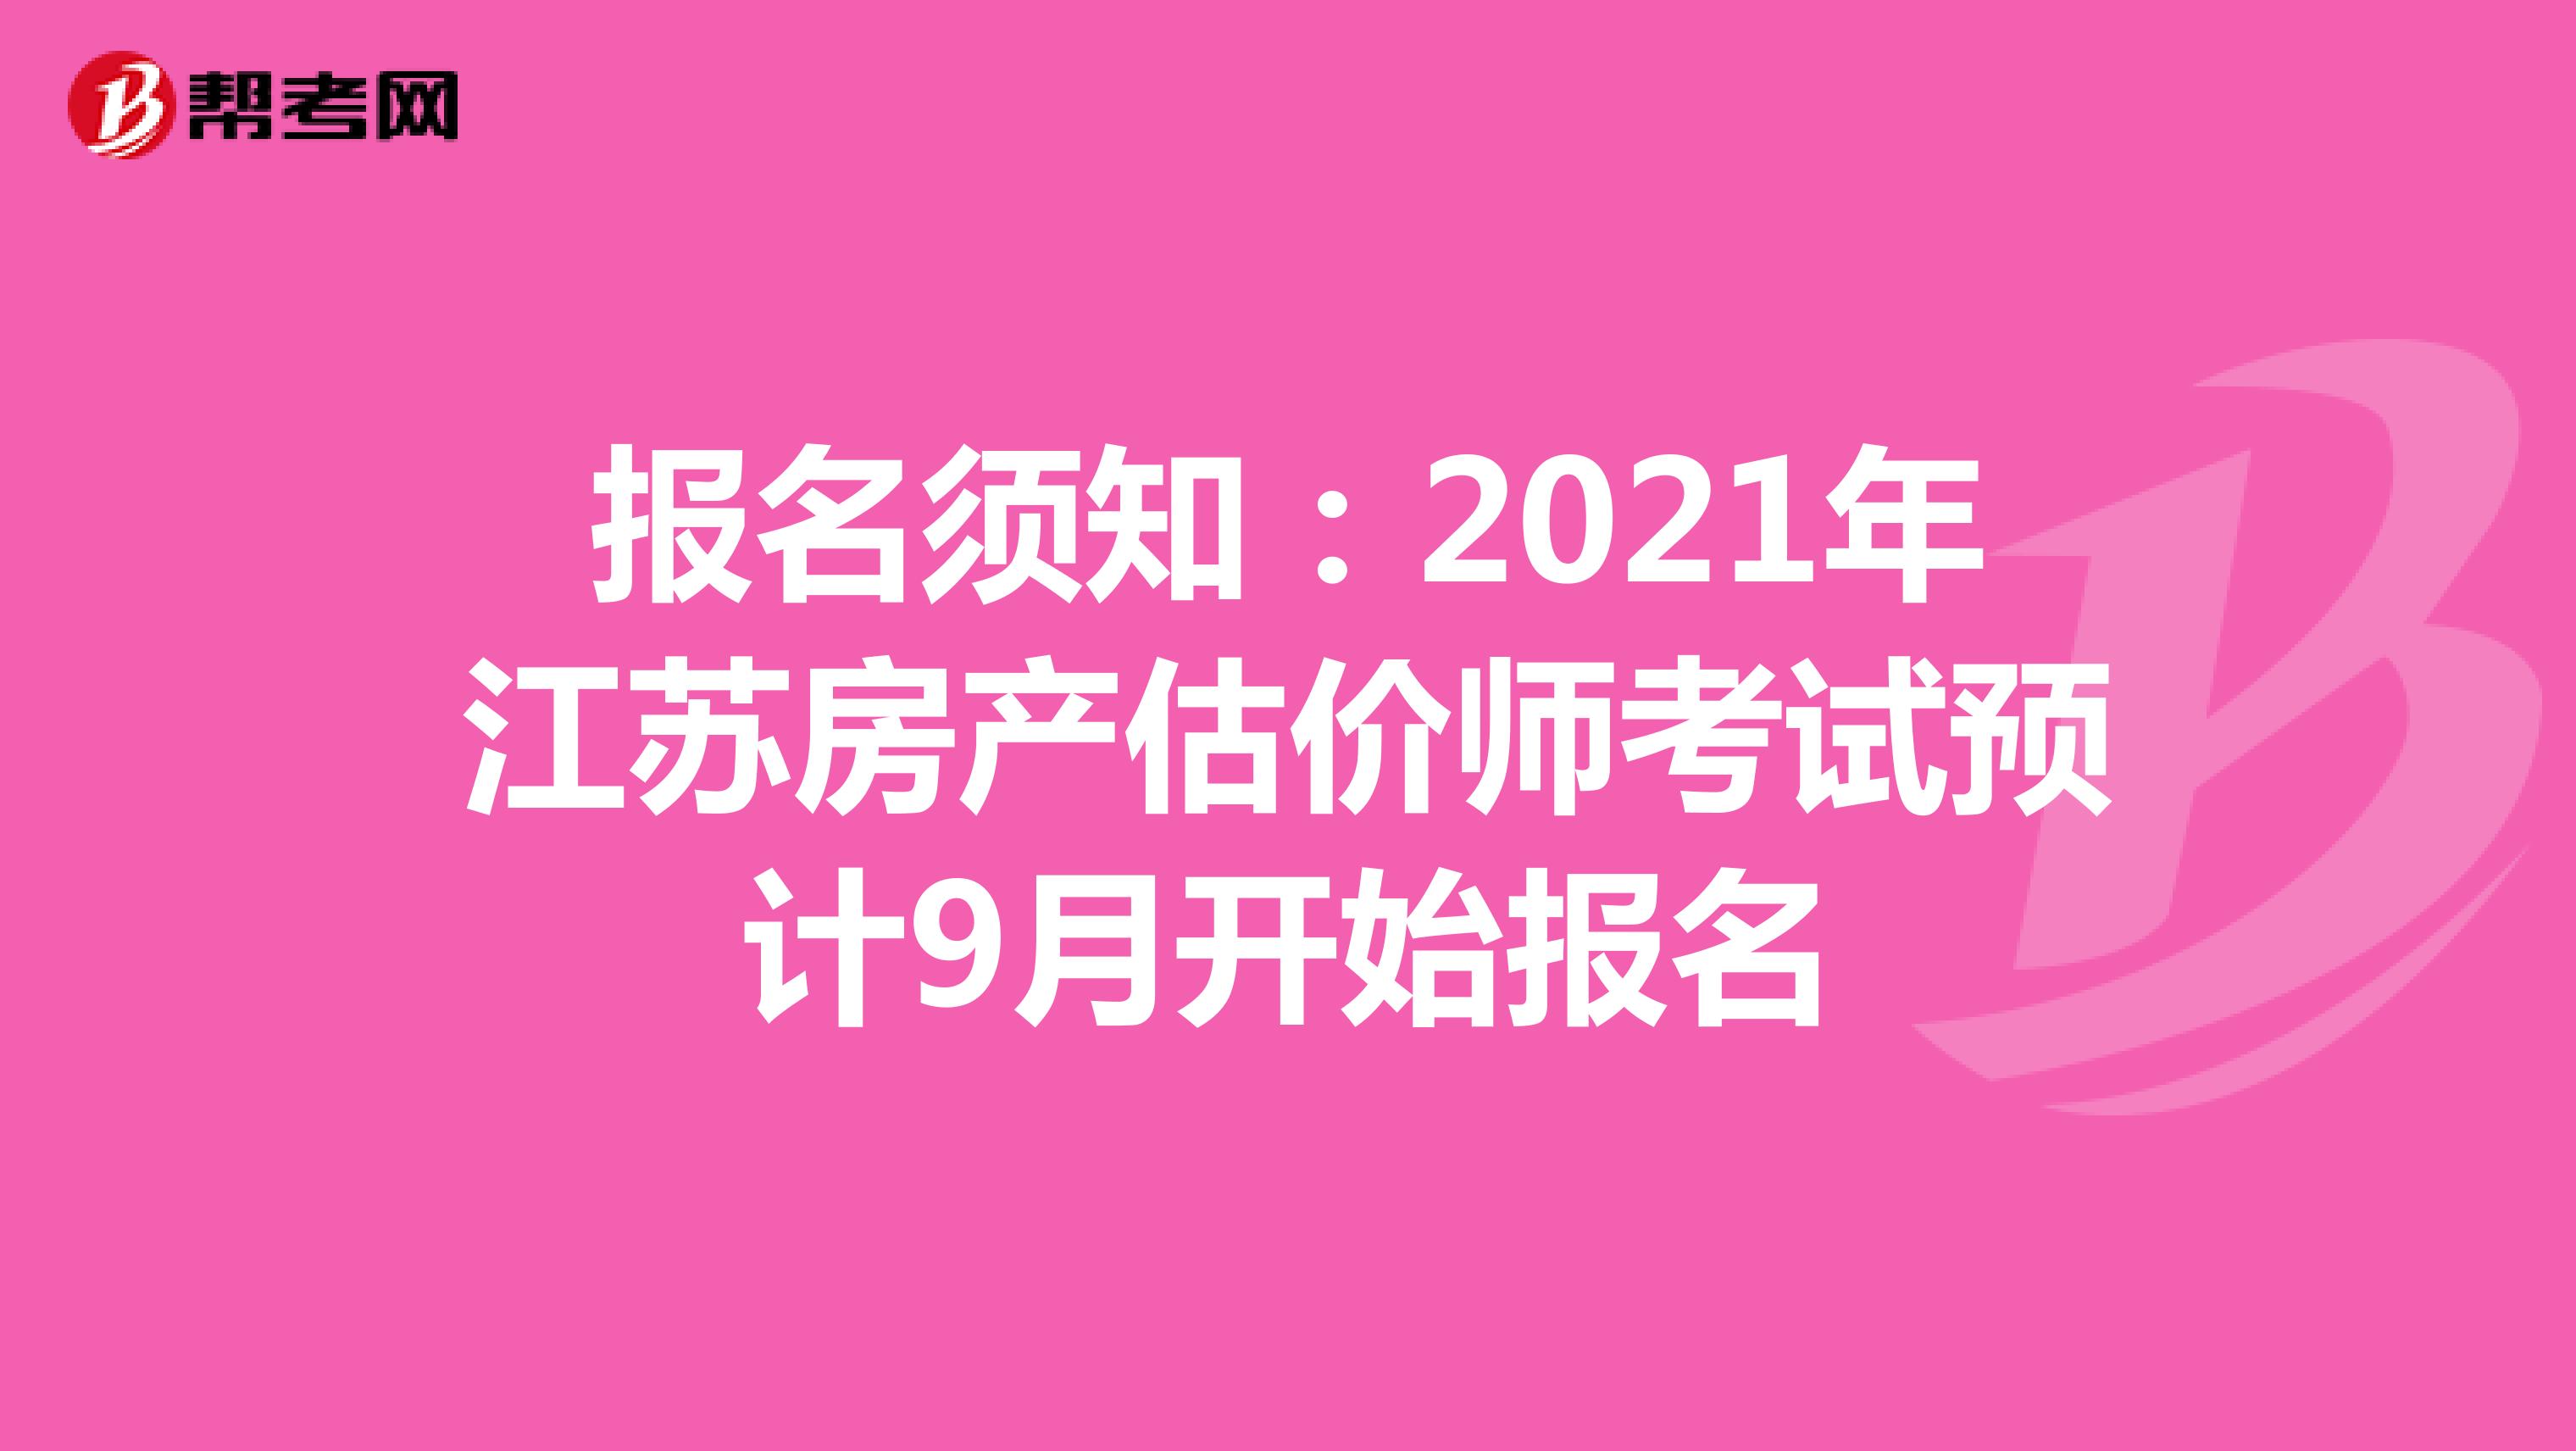 报名须知：2021年江苏房产估价师考试预计9月开始报名